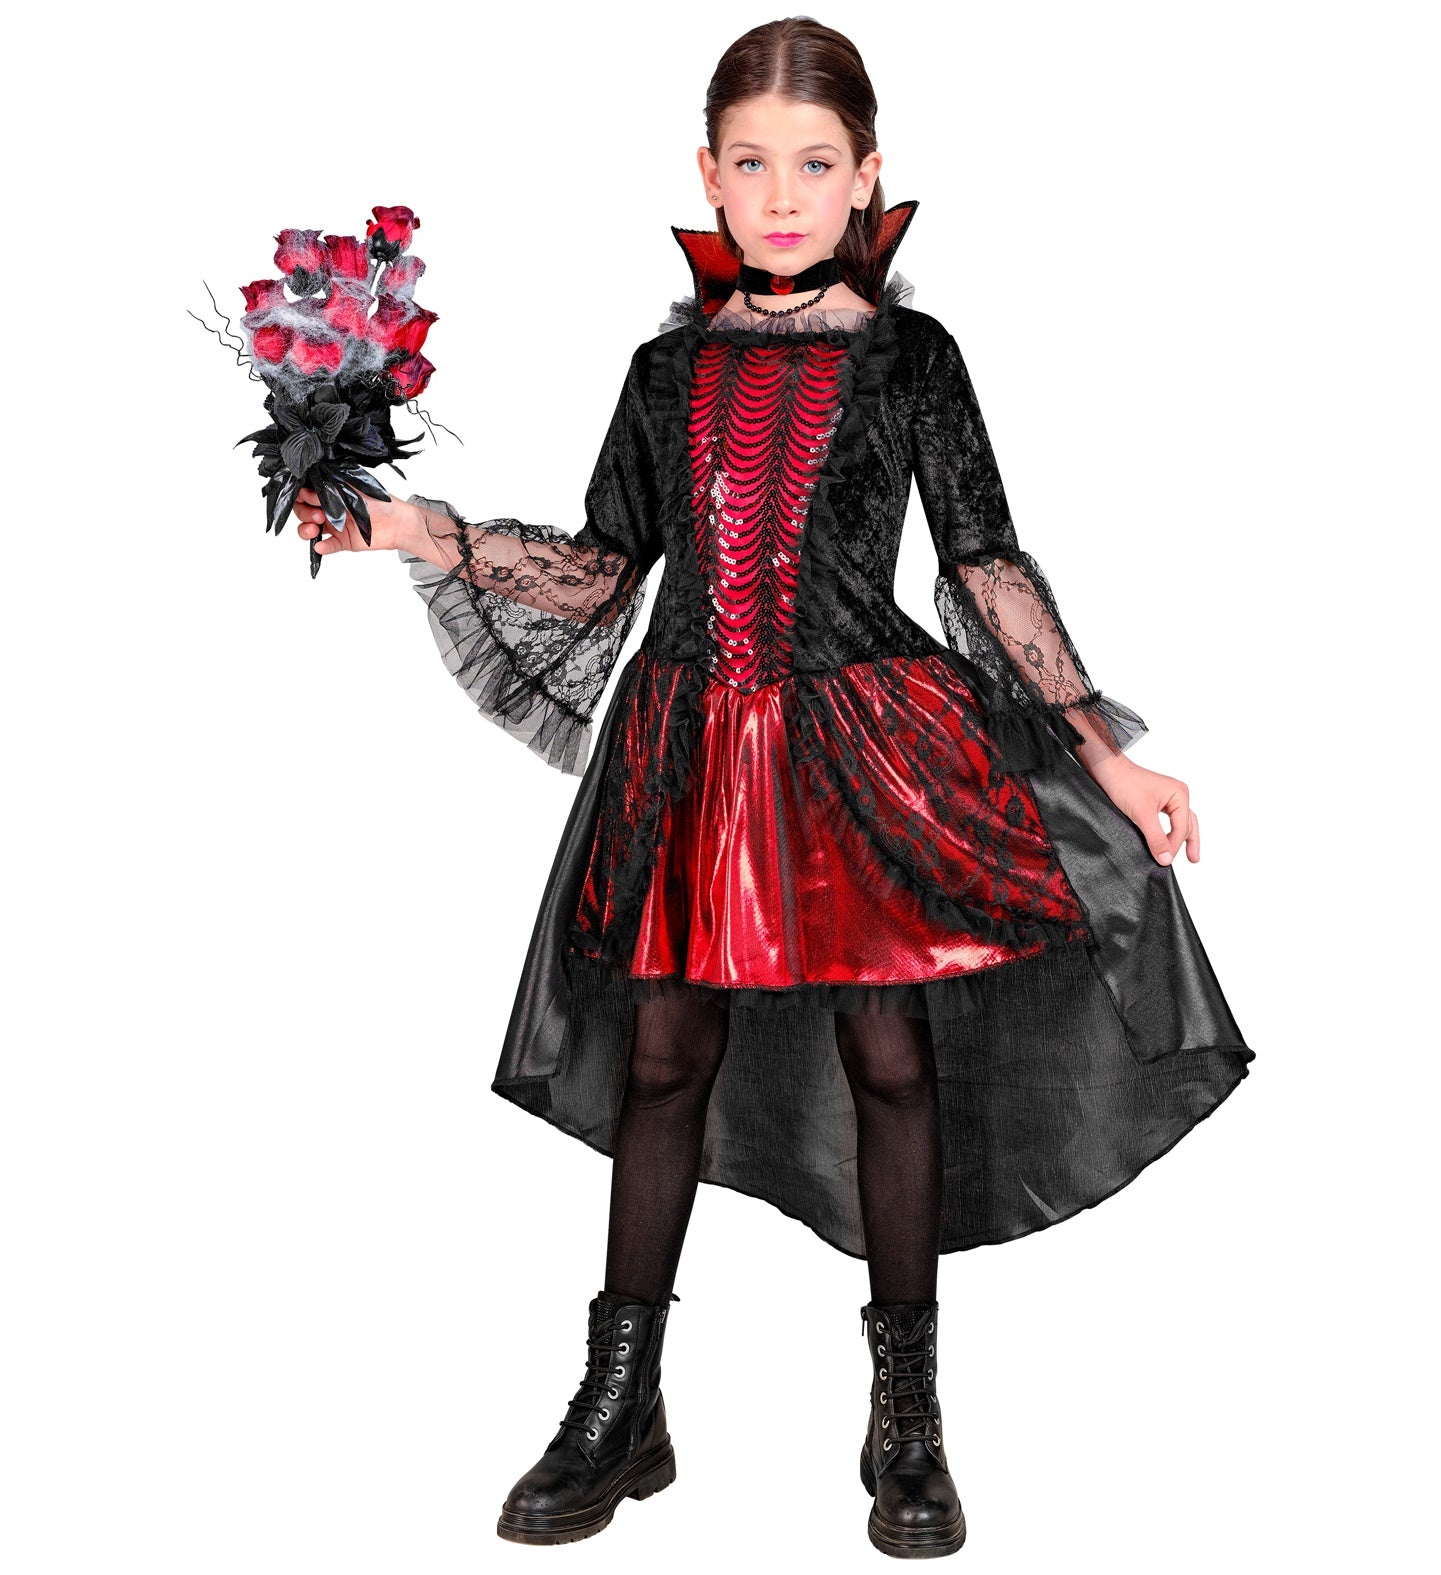 Blood Vampiress Costume Child's